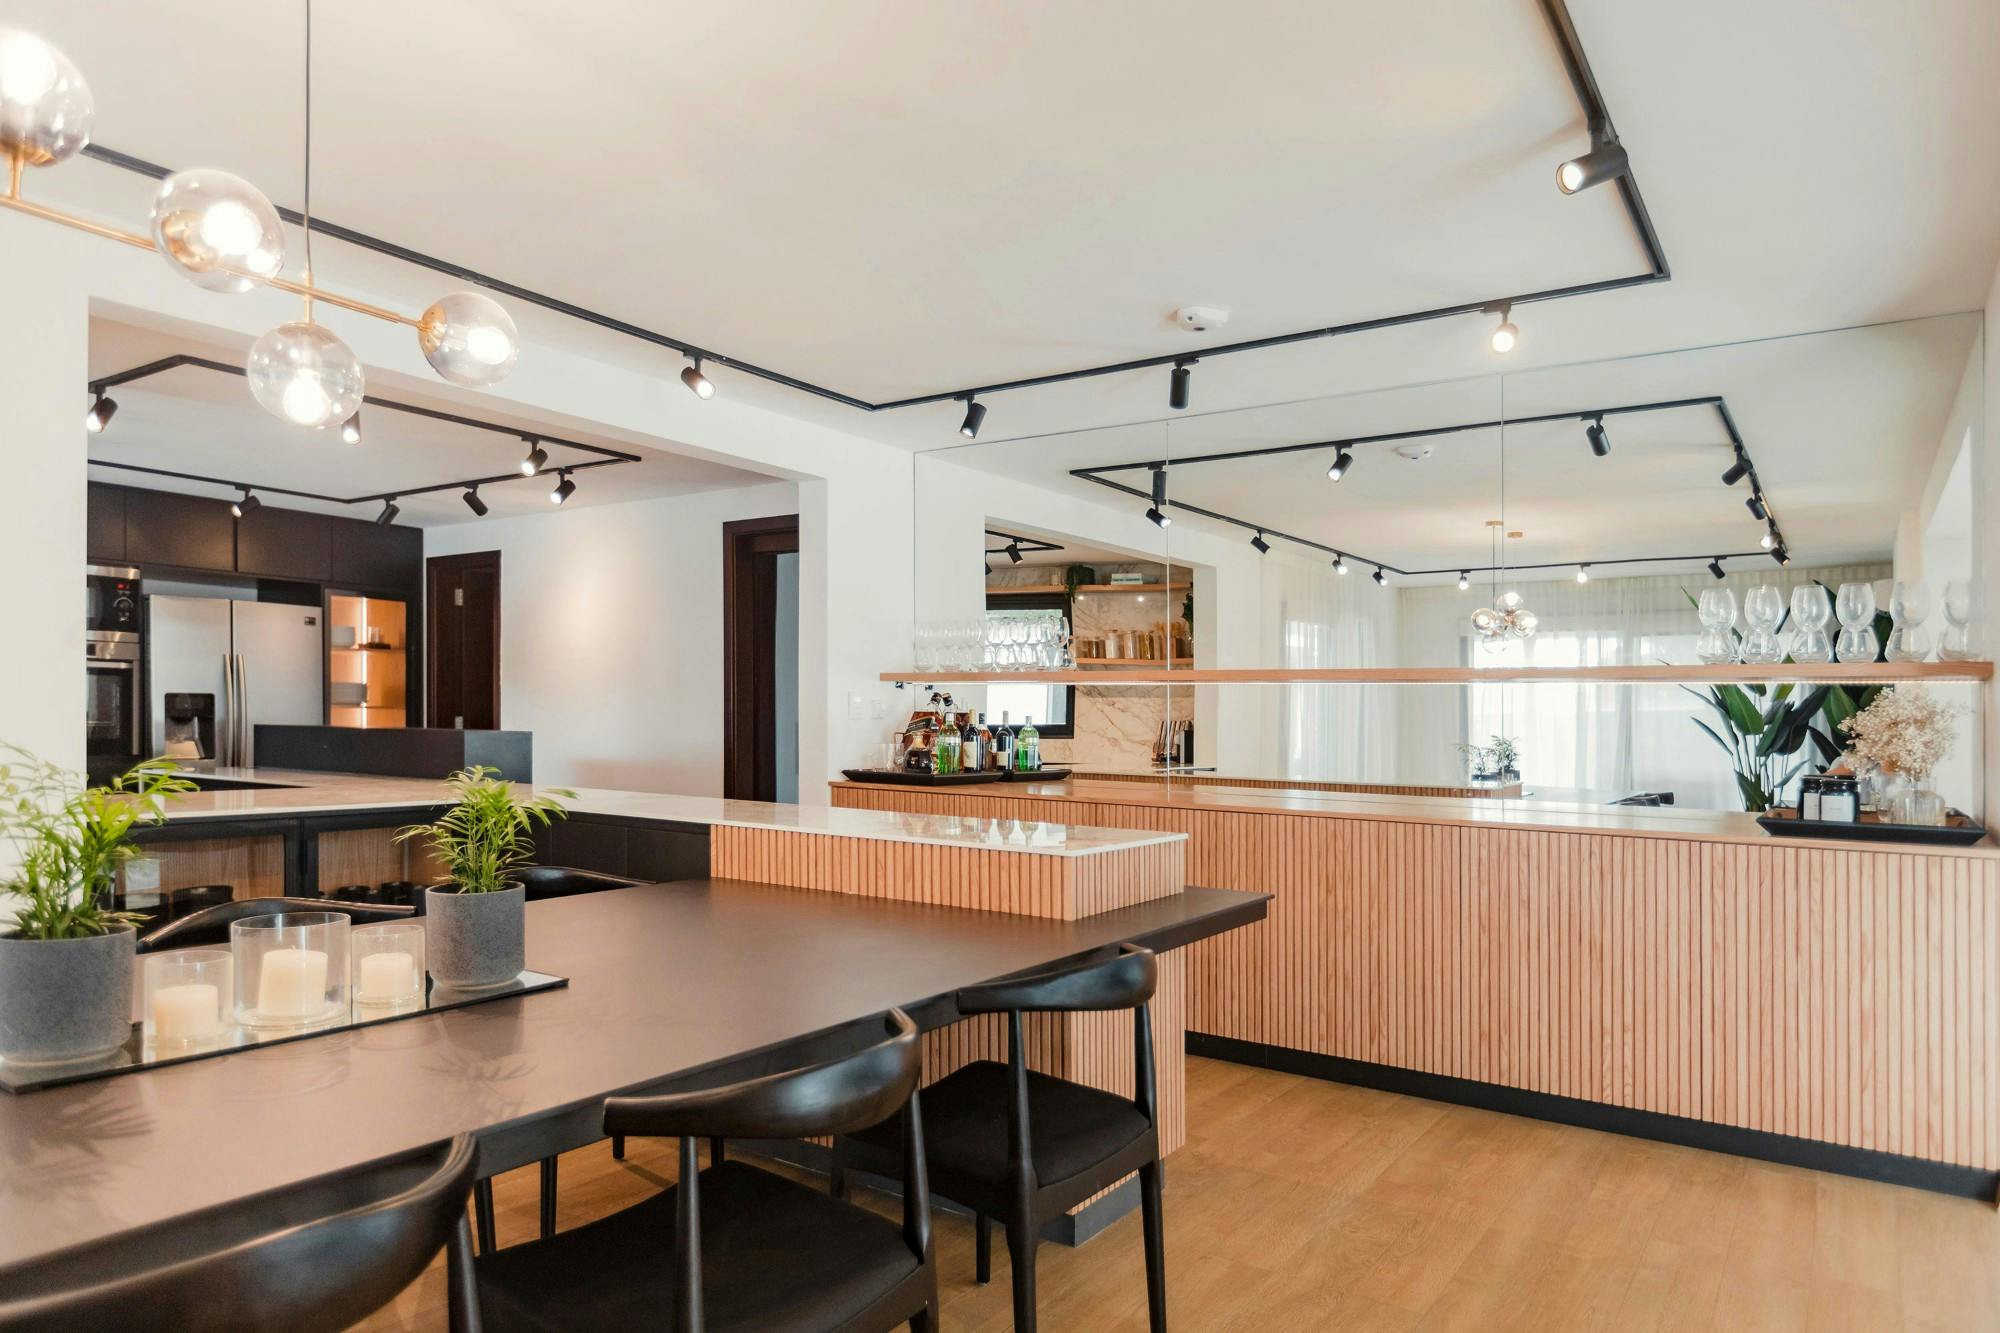 Imagen número 90 de Un apartamento de diseño italiano consigue integrar con elegancia cocina y comedor gracias a Dekton